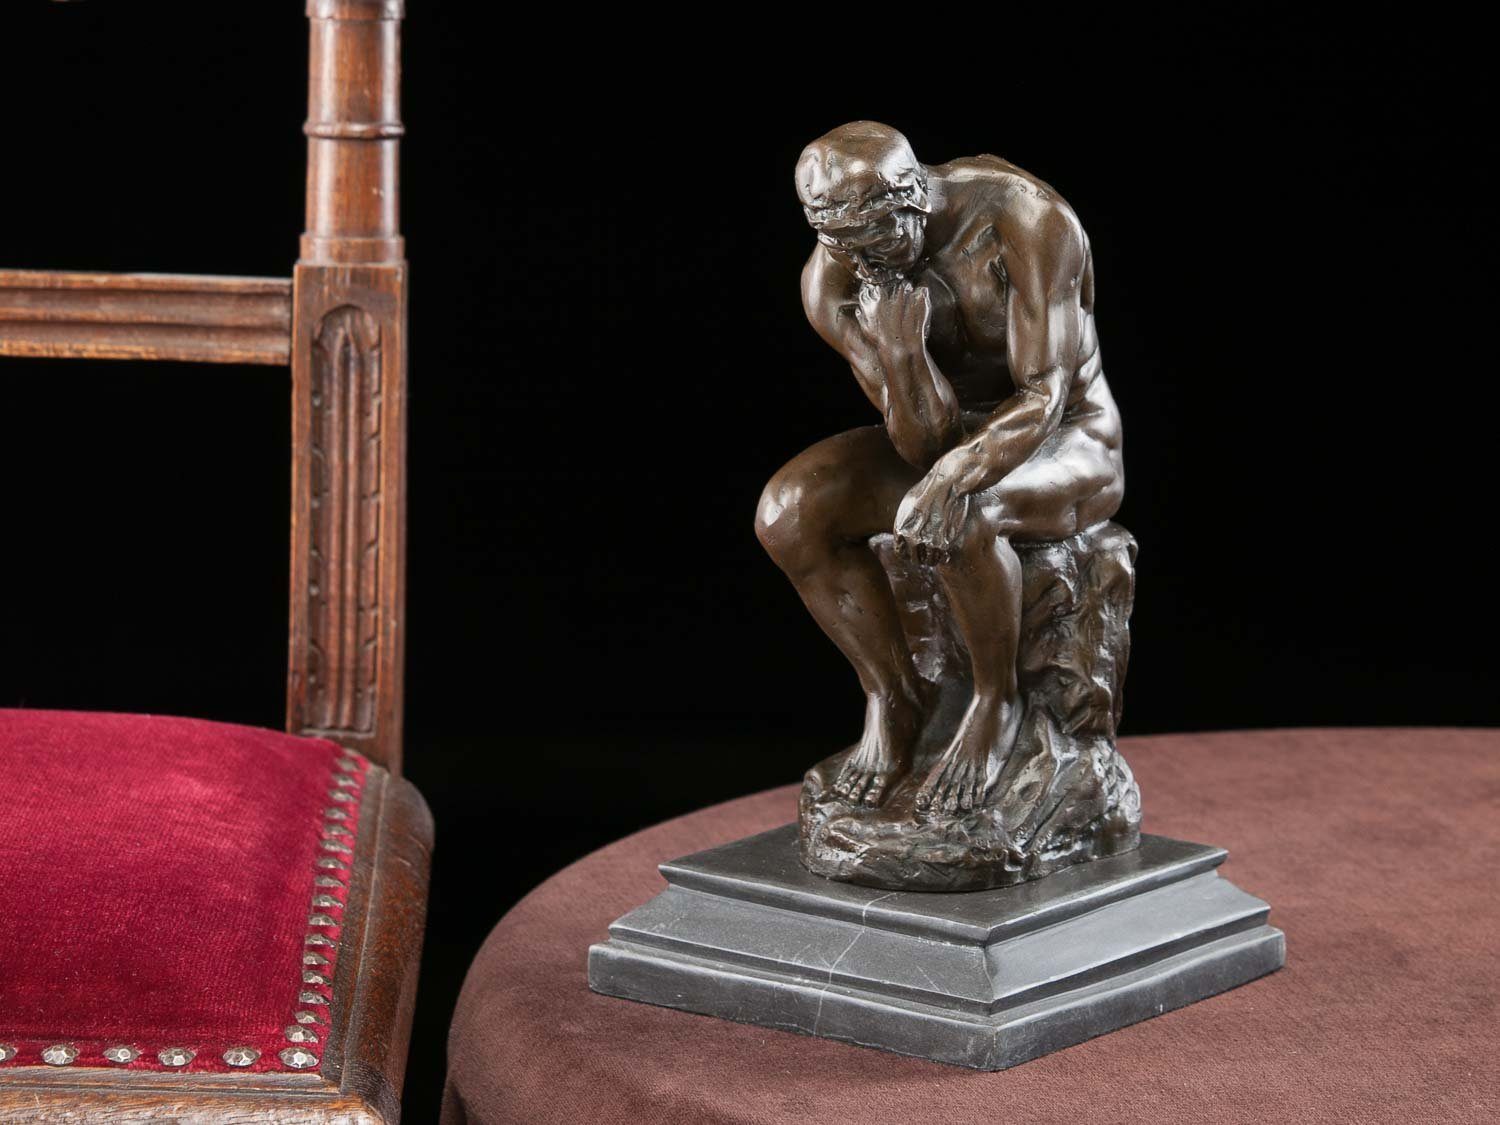 25cm Ko Mann Rodin Skulptur Skulptur nach Aubaho Denker der Bronzefigur Bronzeskulptur